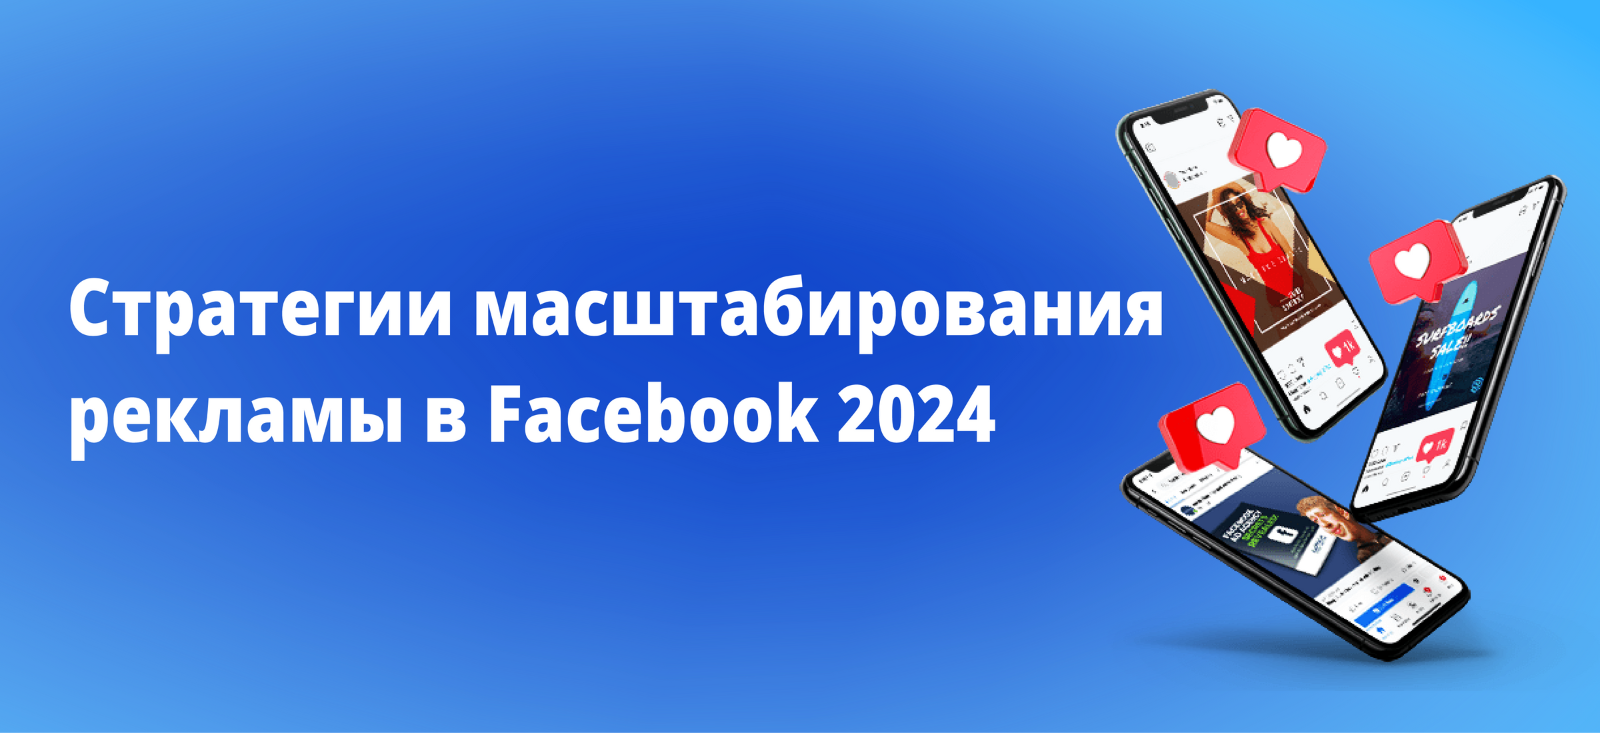 Стратегии масштабирования рекламы в Facebook 2024